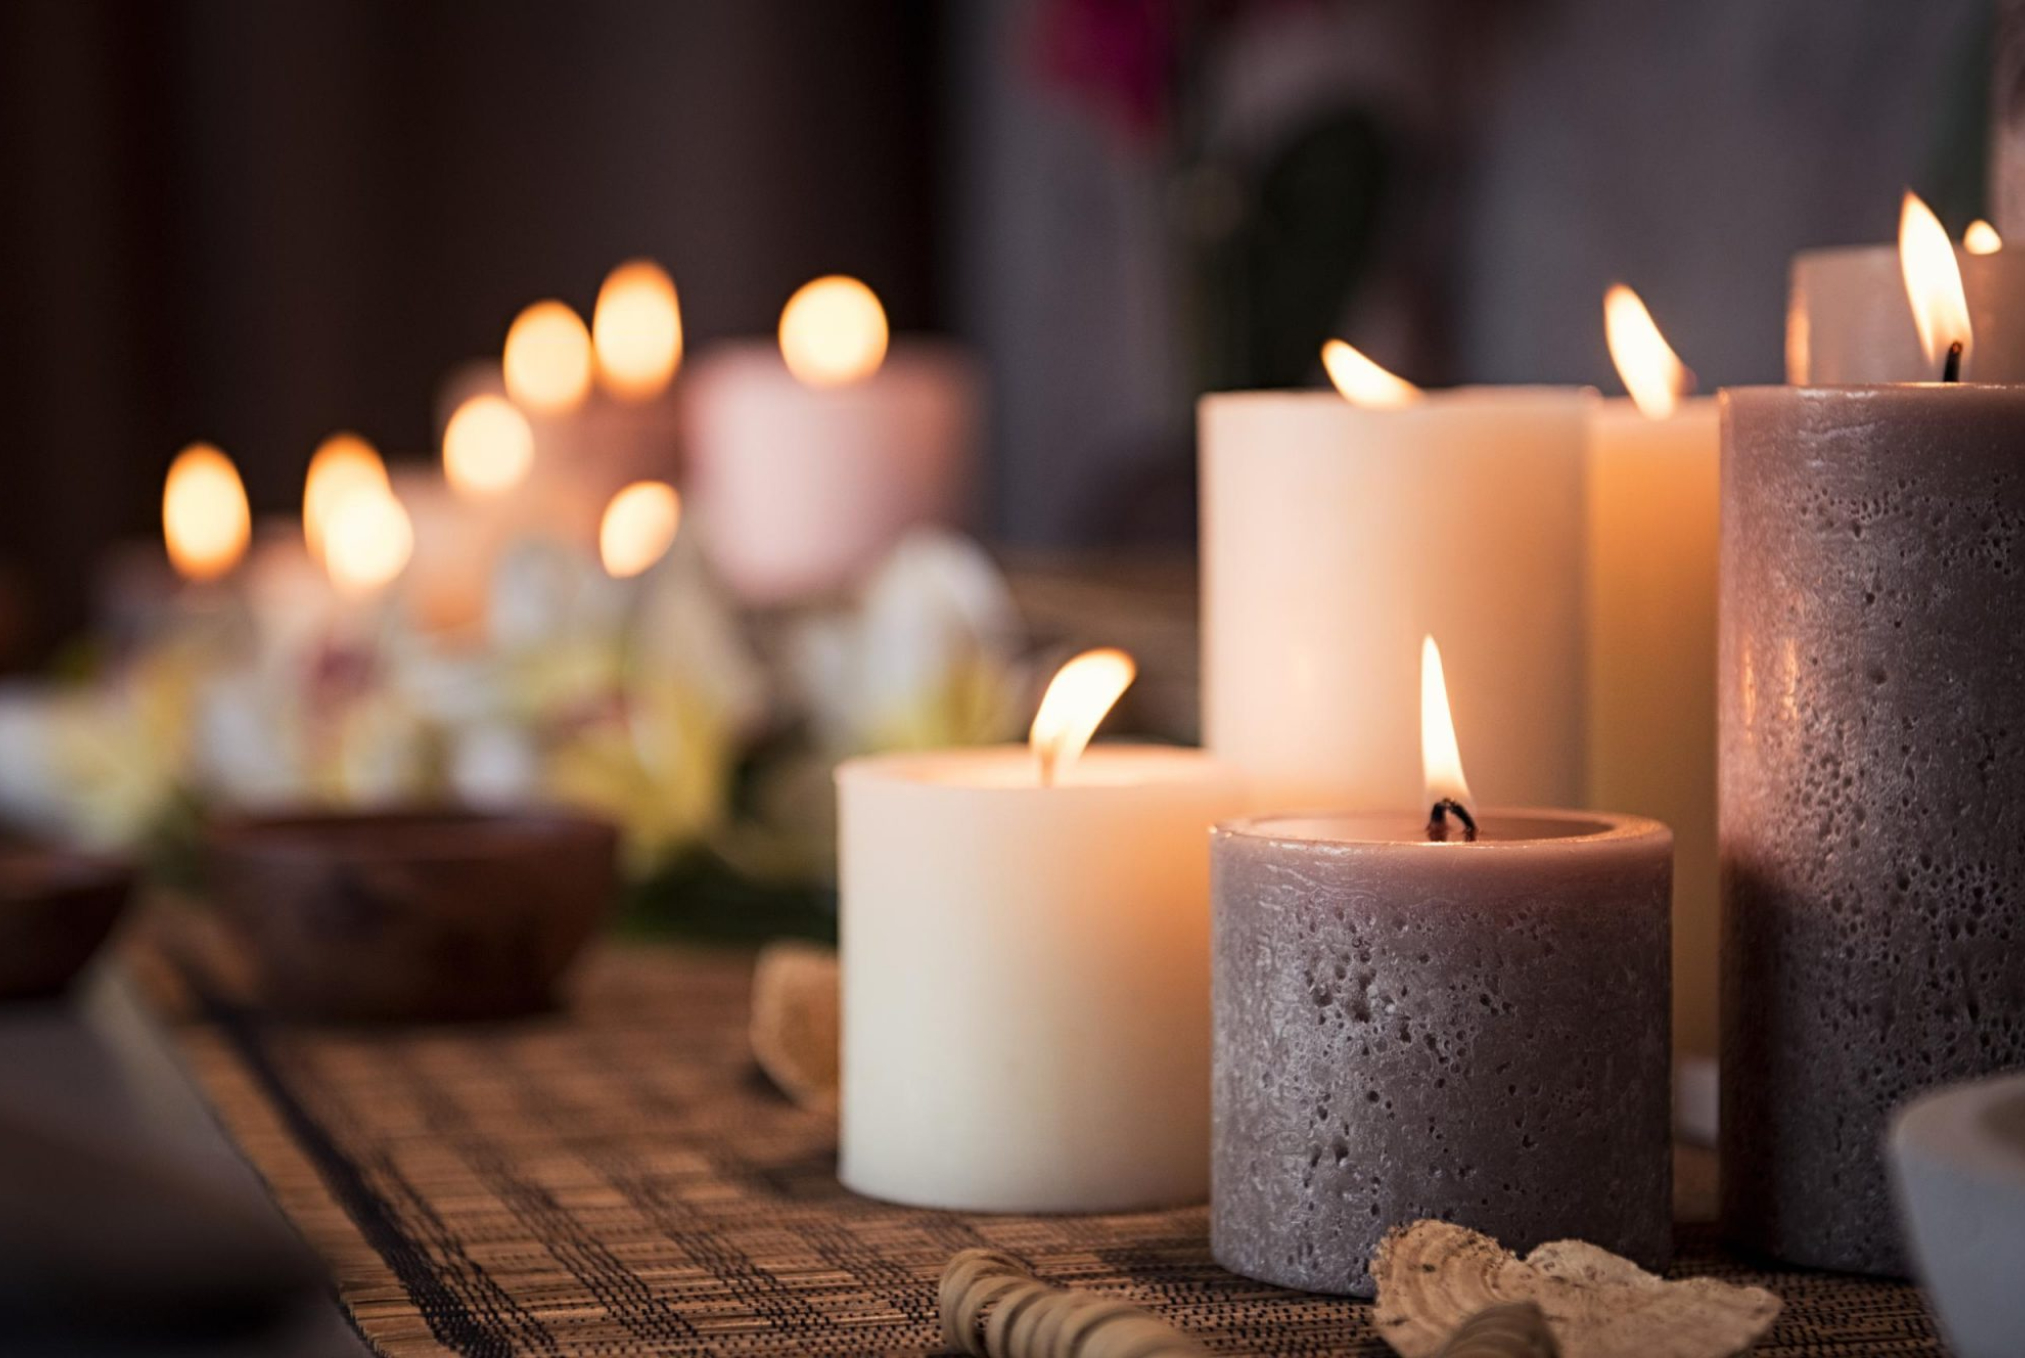 Σκόνη χνούδια και κιτρινίλες στα διακοσμητικά κεριά: Κάντε τα σαν καινούρια γρήγορα και χωρίς κόπο 